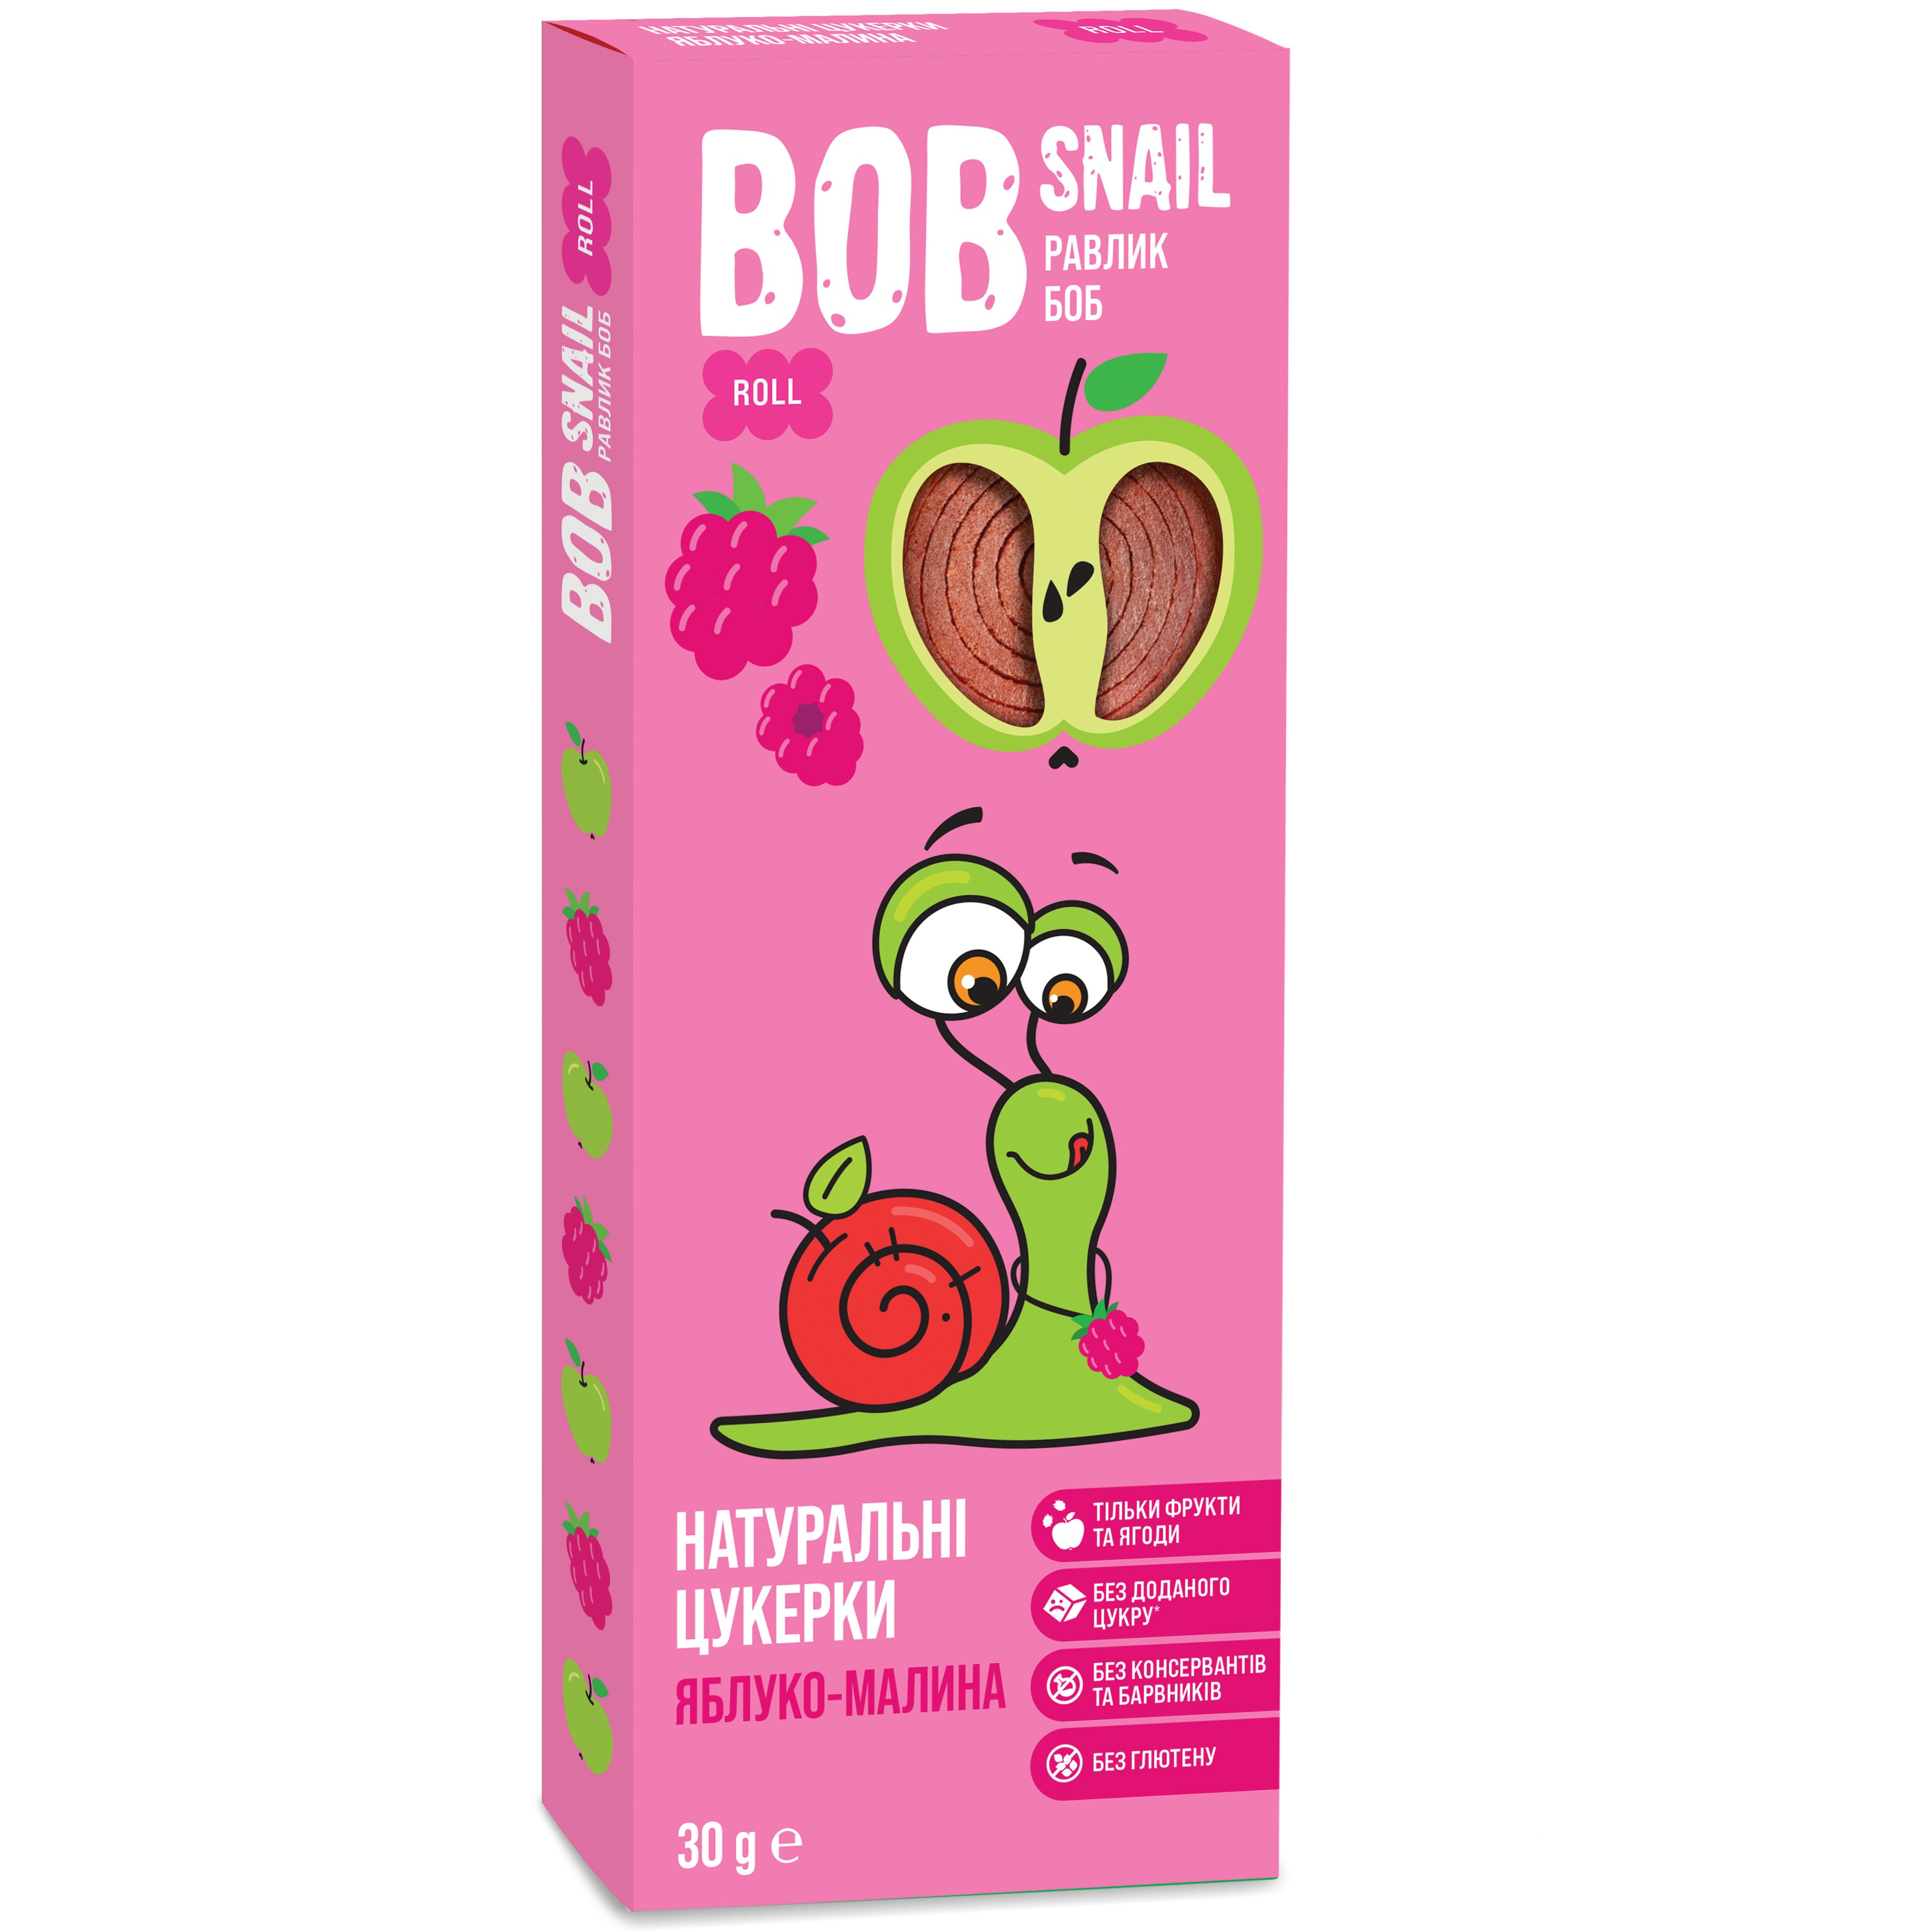 Фруктовые яблочно-малиновые конфеты Bob Snail 30 г - фото 1